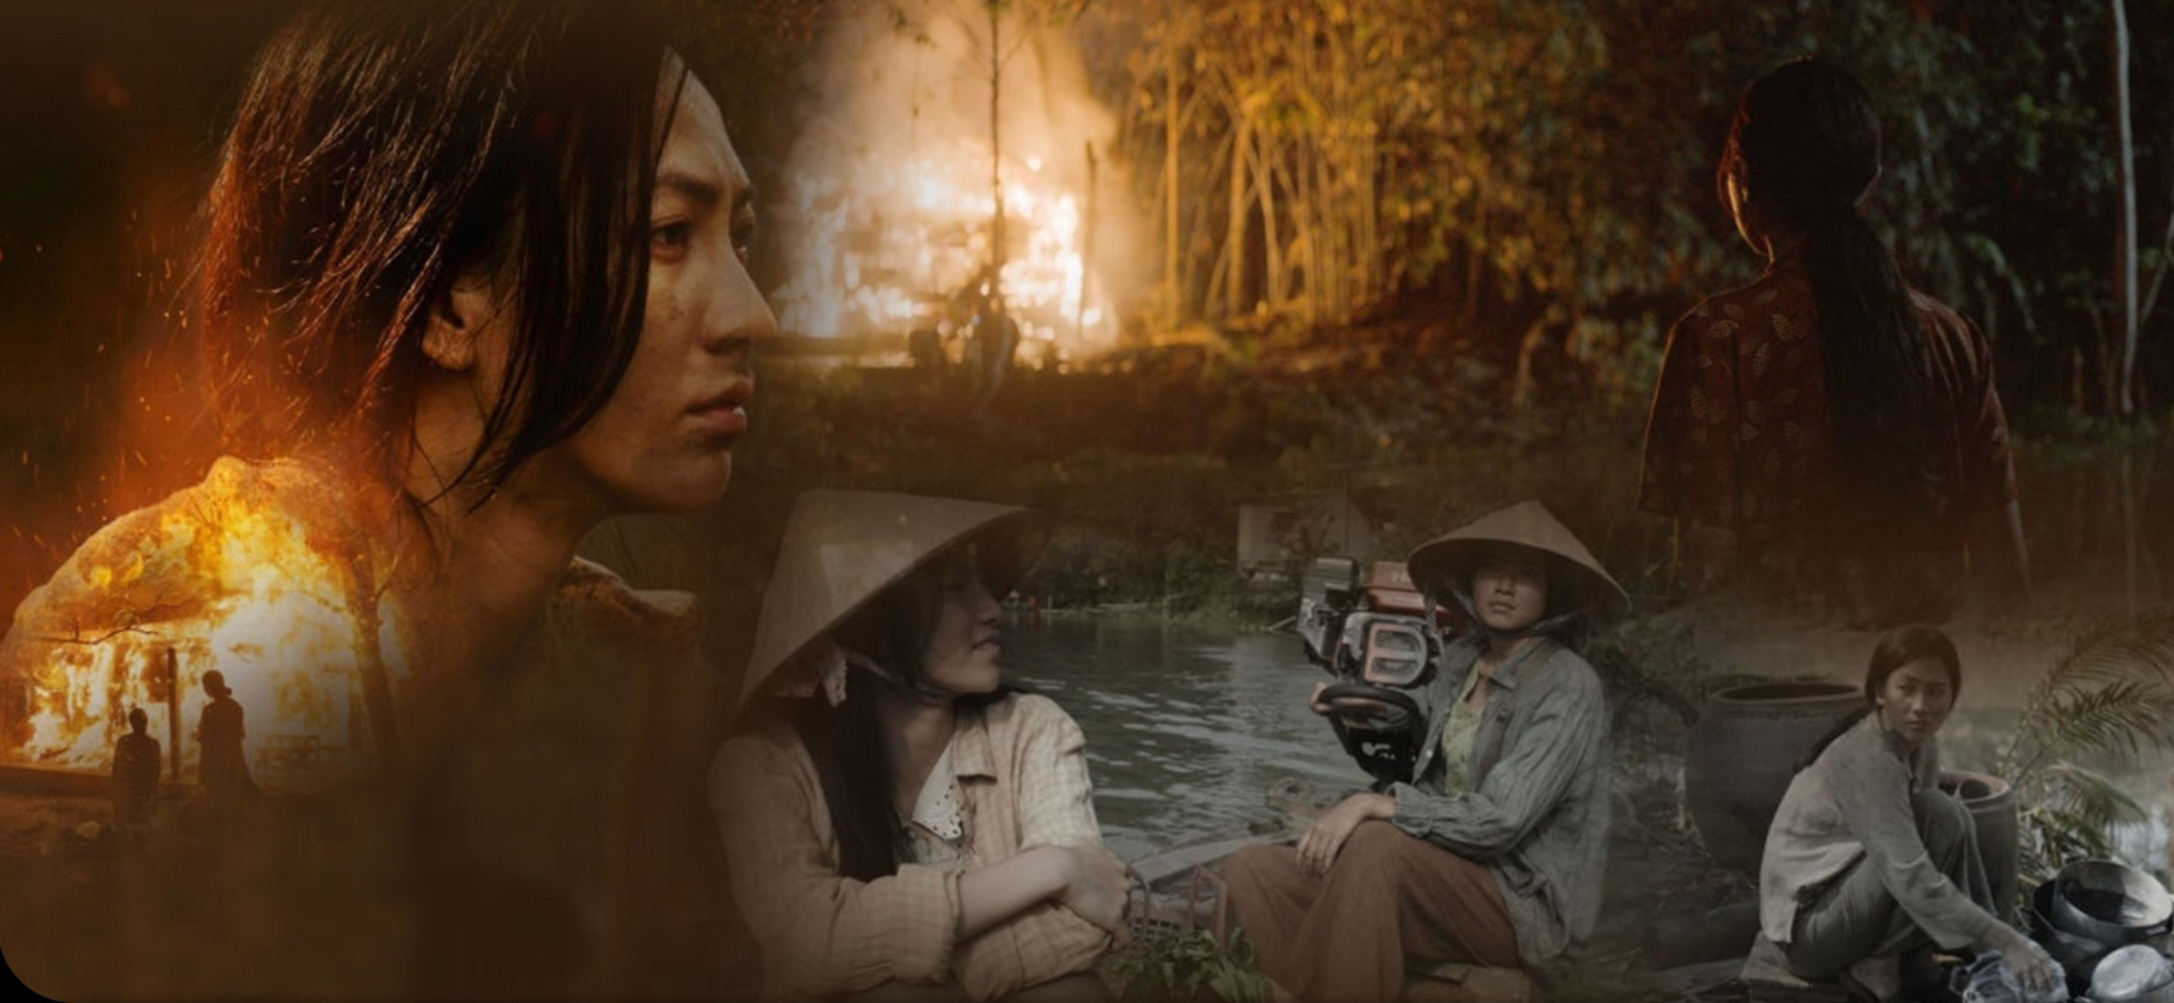 “Tro tàn rực rỡ” thắng giải Khinh khí cầu vàng tại Liên hoan phim quốc tế Ba châu lục (Nantes, Pháp); là phim Việt đầu tiên tranh giải Liên hoan phim quốc tế Tokyo.